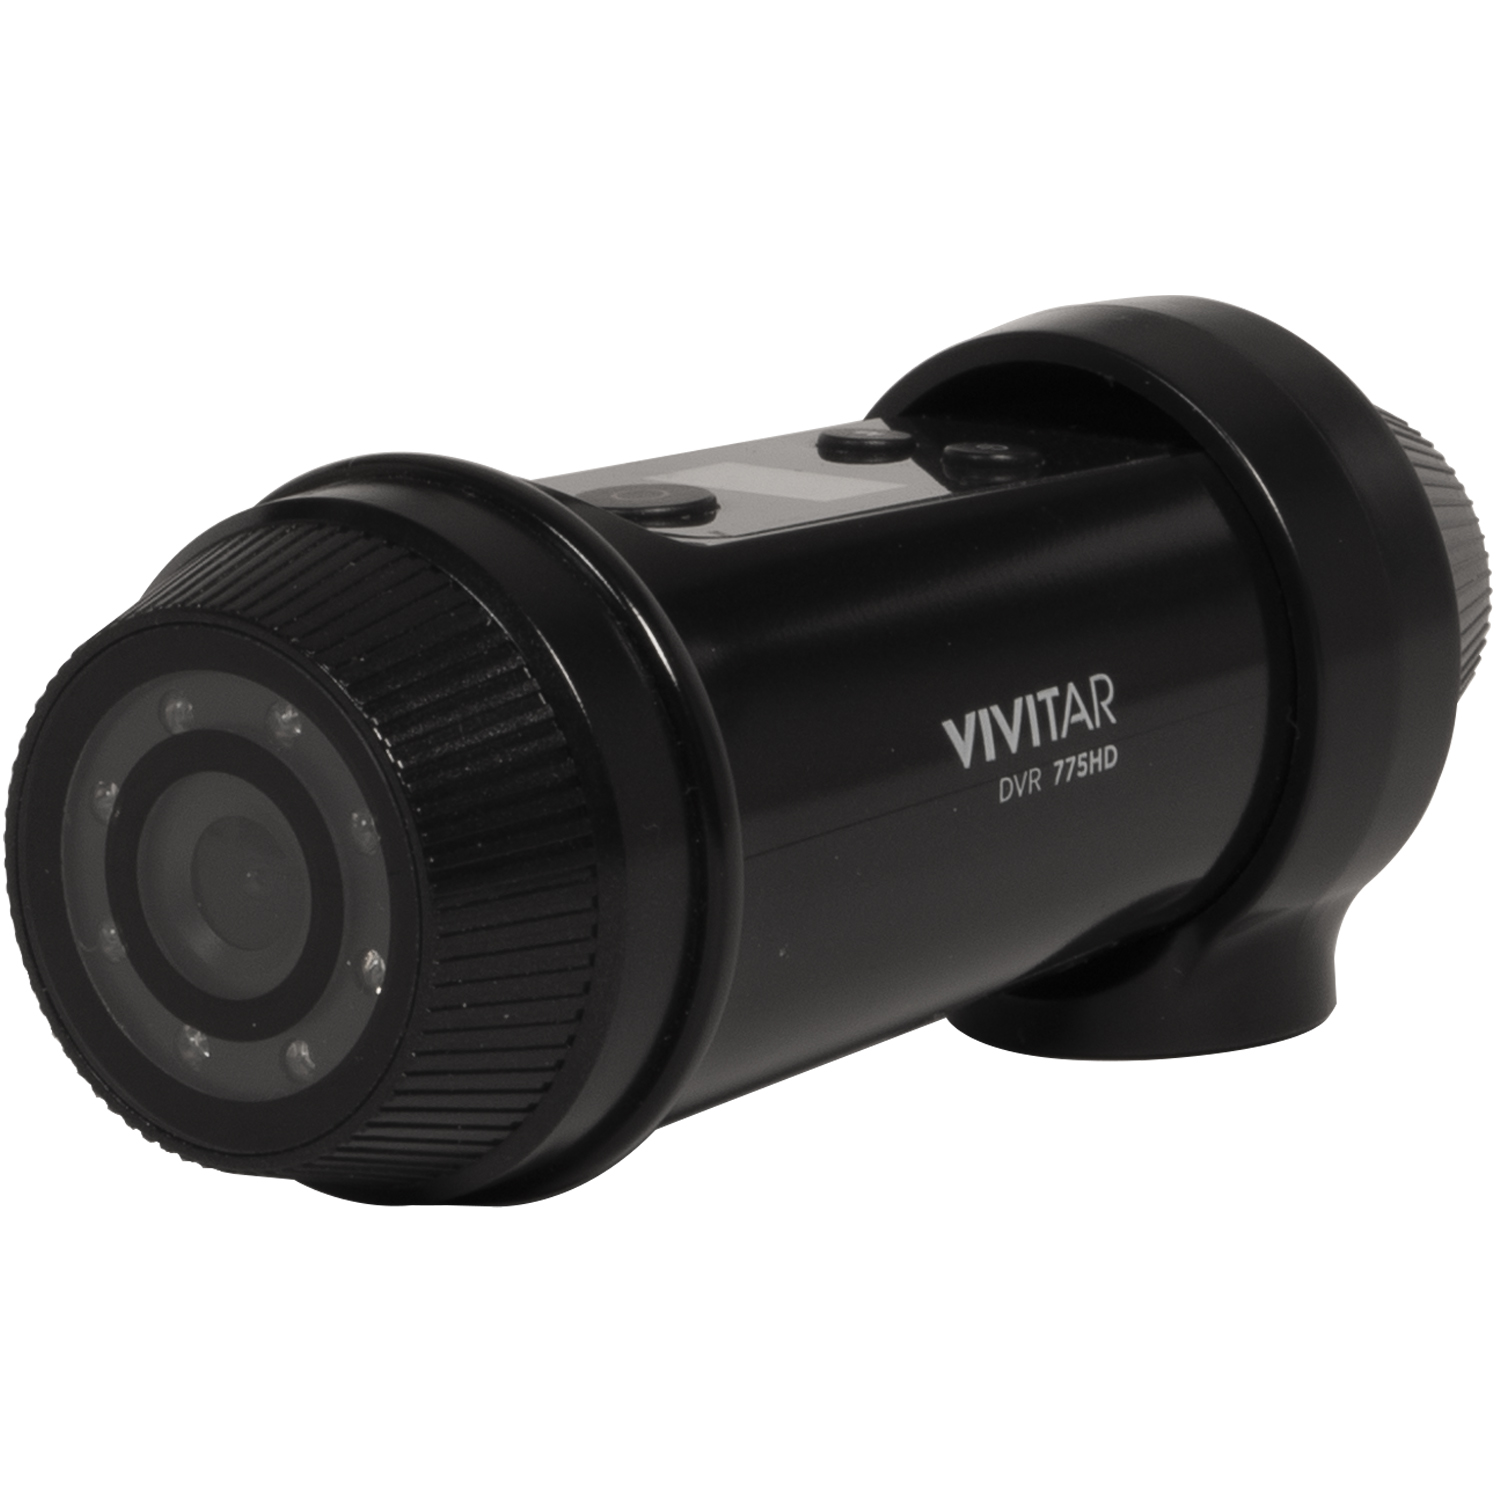 Vivitar FHD Action Camera 1080p Full HD + Bike & Helmet Mount Kit